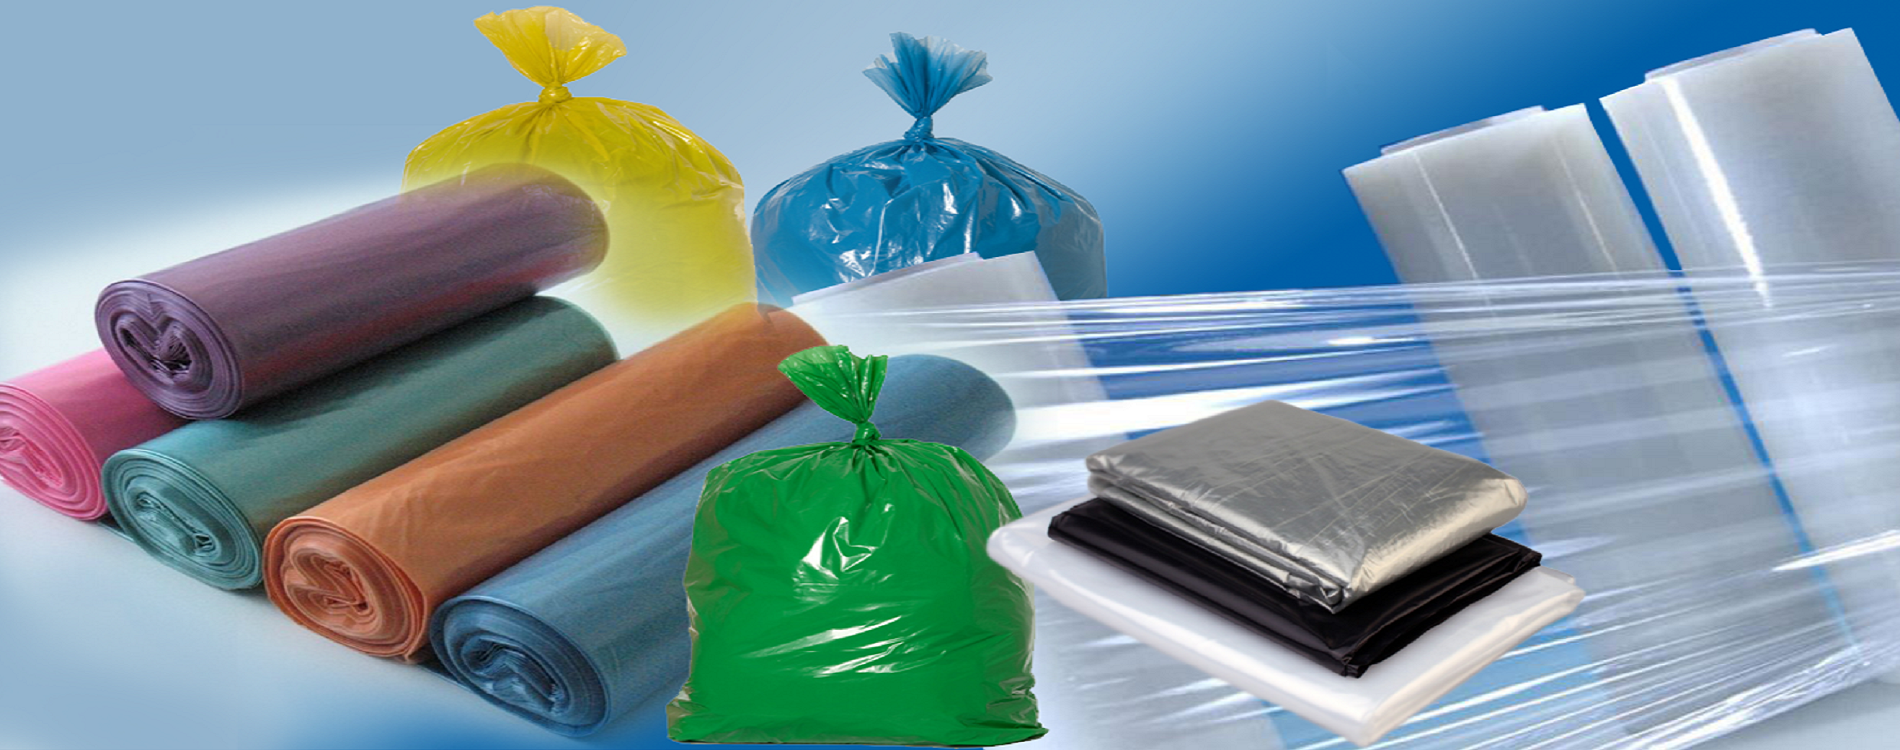 Полиэтилен изделия. Упаковочный материал полиэтилен. Пакеты из полиэтиленовой пленки. Синтетические упаковочные материалы.